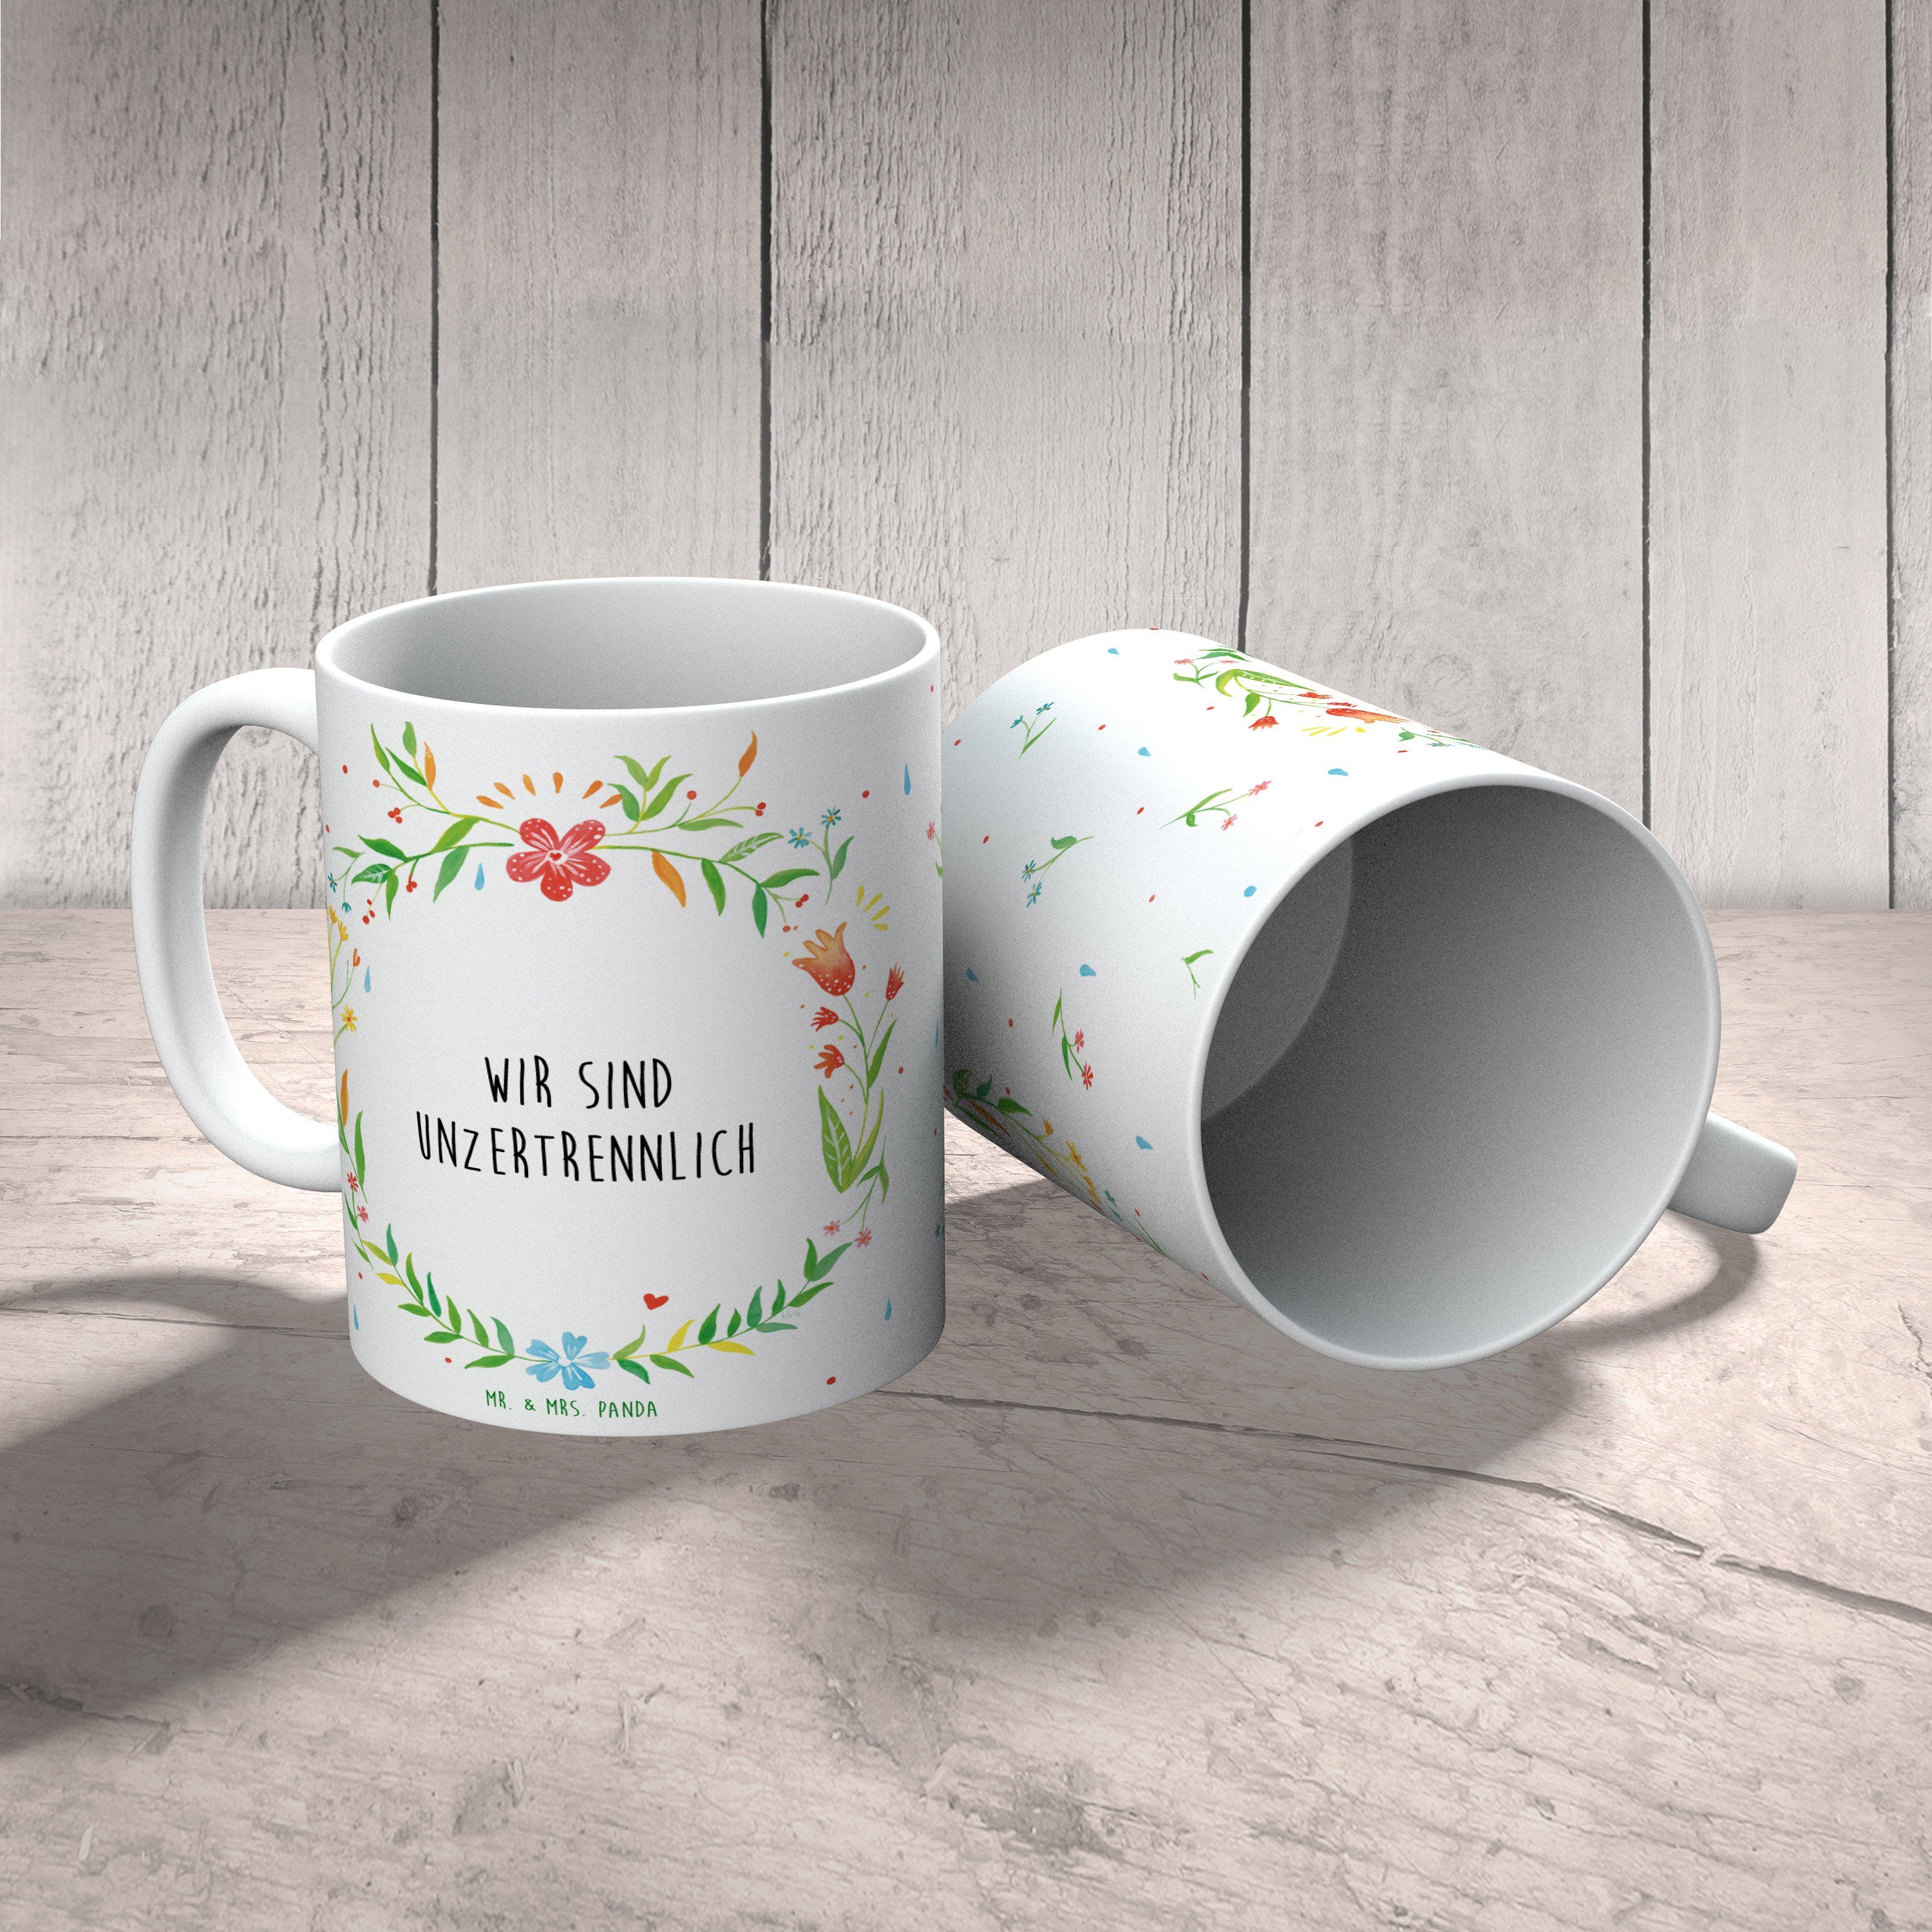 Mr. & Mrs. Panda Tasse Keramik Motive, unzertrennlich Wir T, - Geschenk, Becher, Tasse sind Teetasse